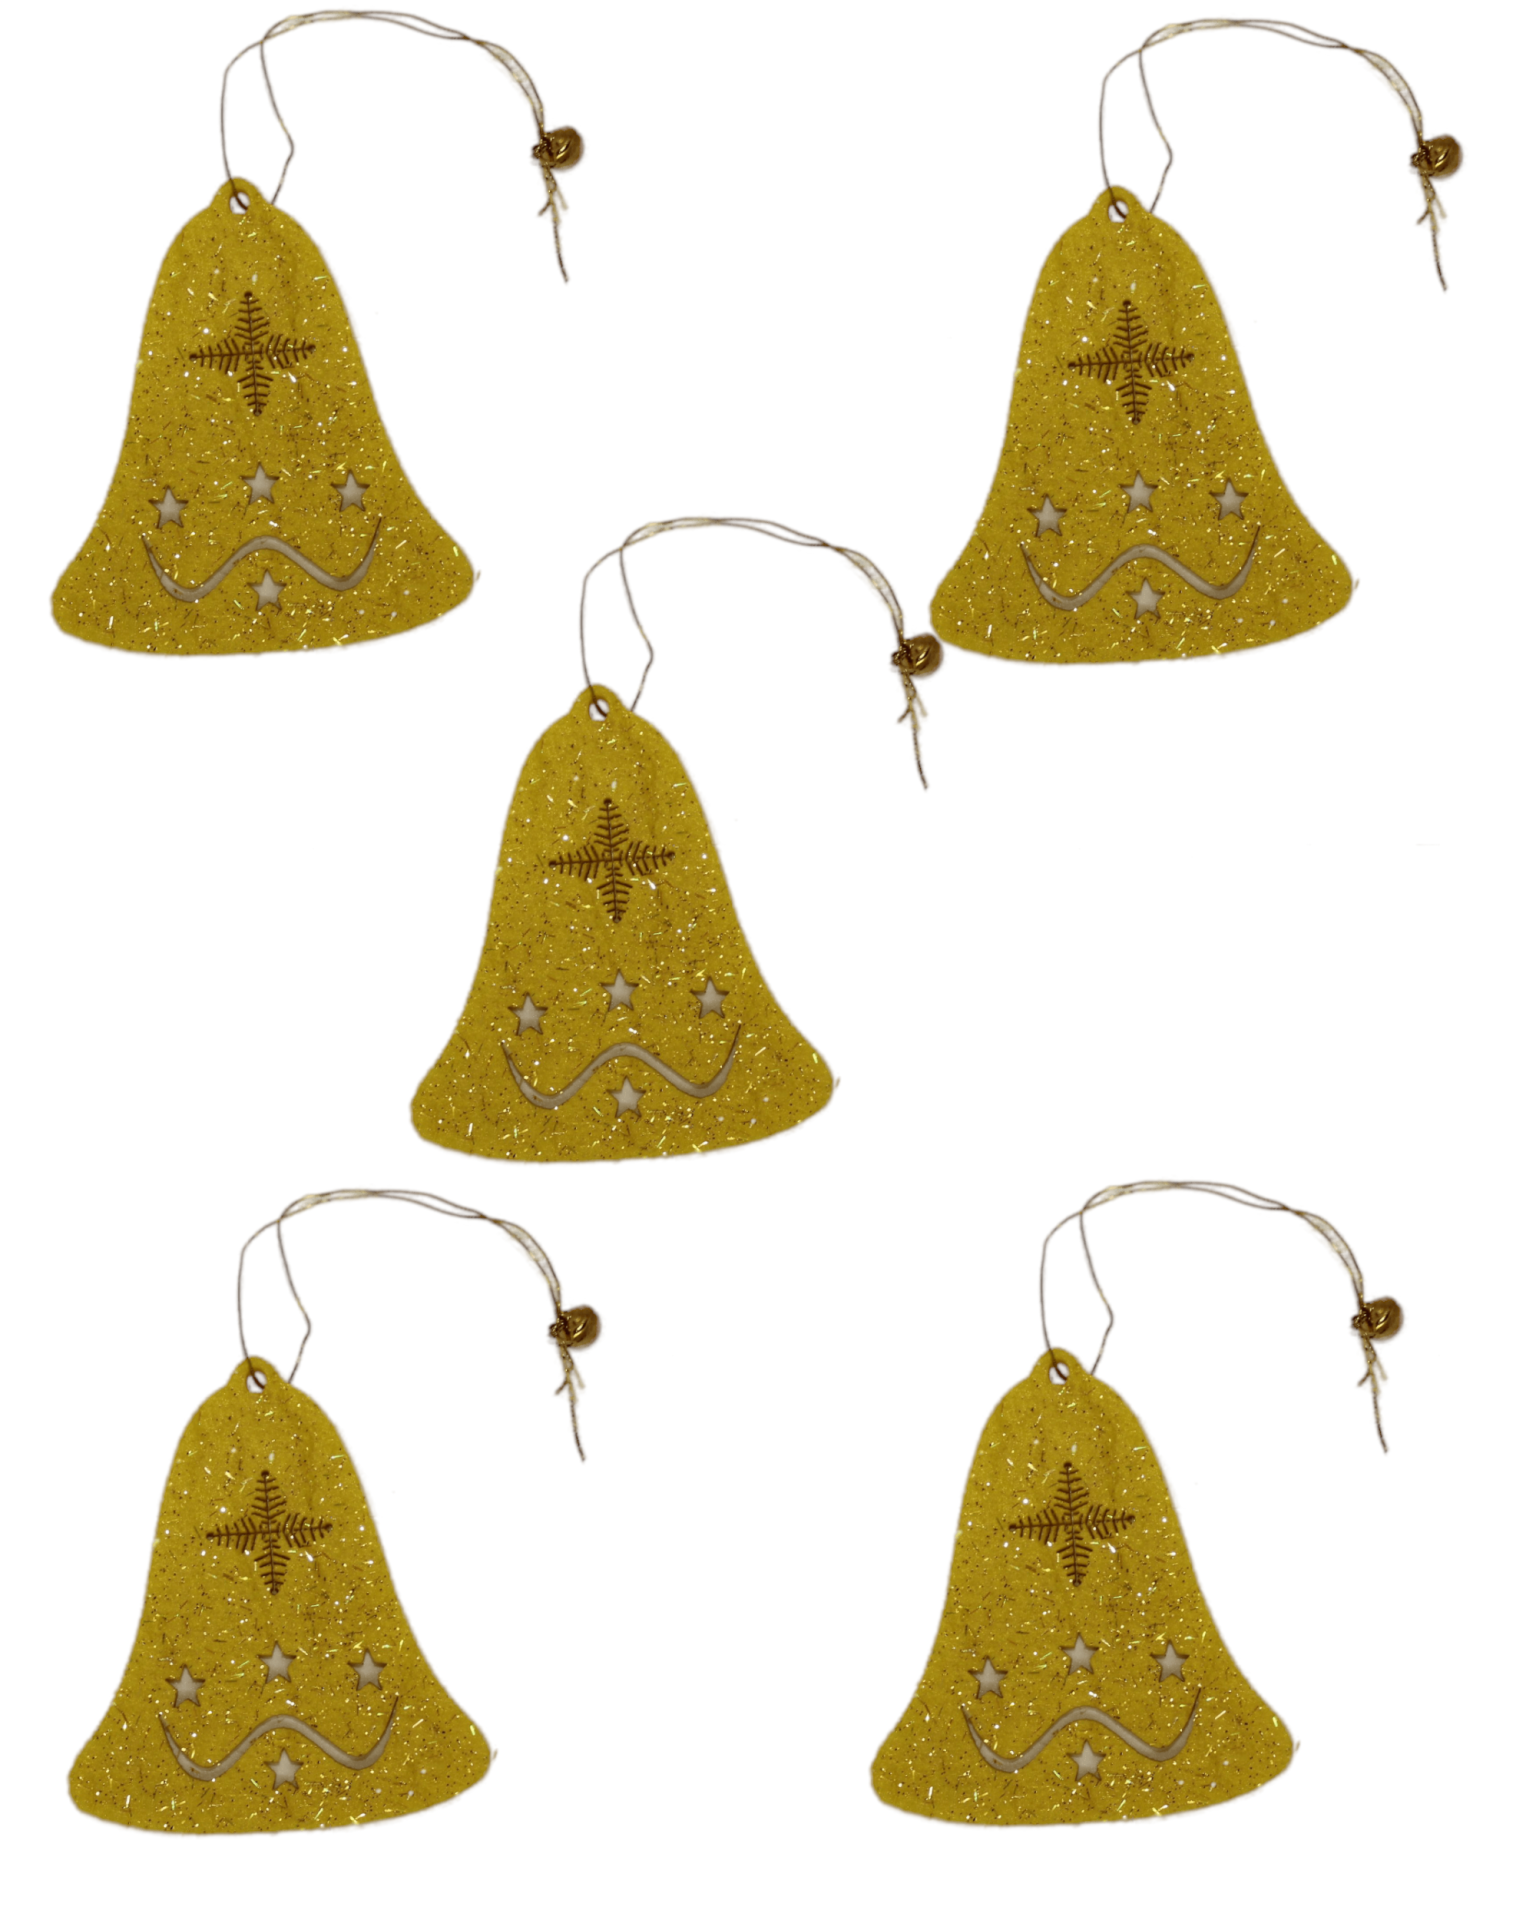 Yılbaşı Ağacı Süsleme Seti - Simli Keçe Hediye Süs - 5 Adet 7X8 cm YÇ001 Sarı Renk